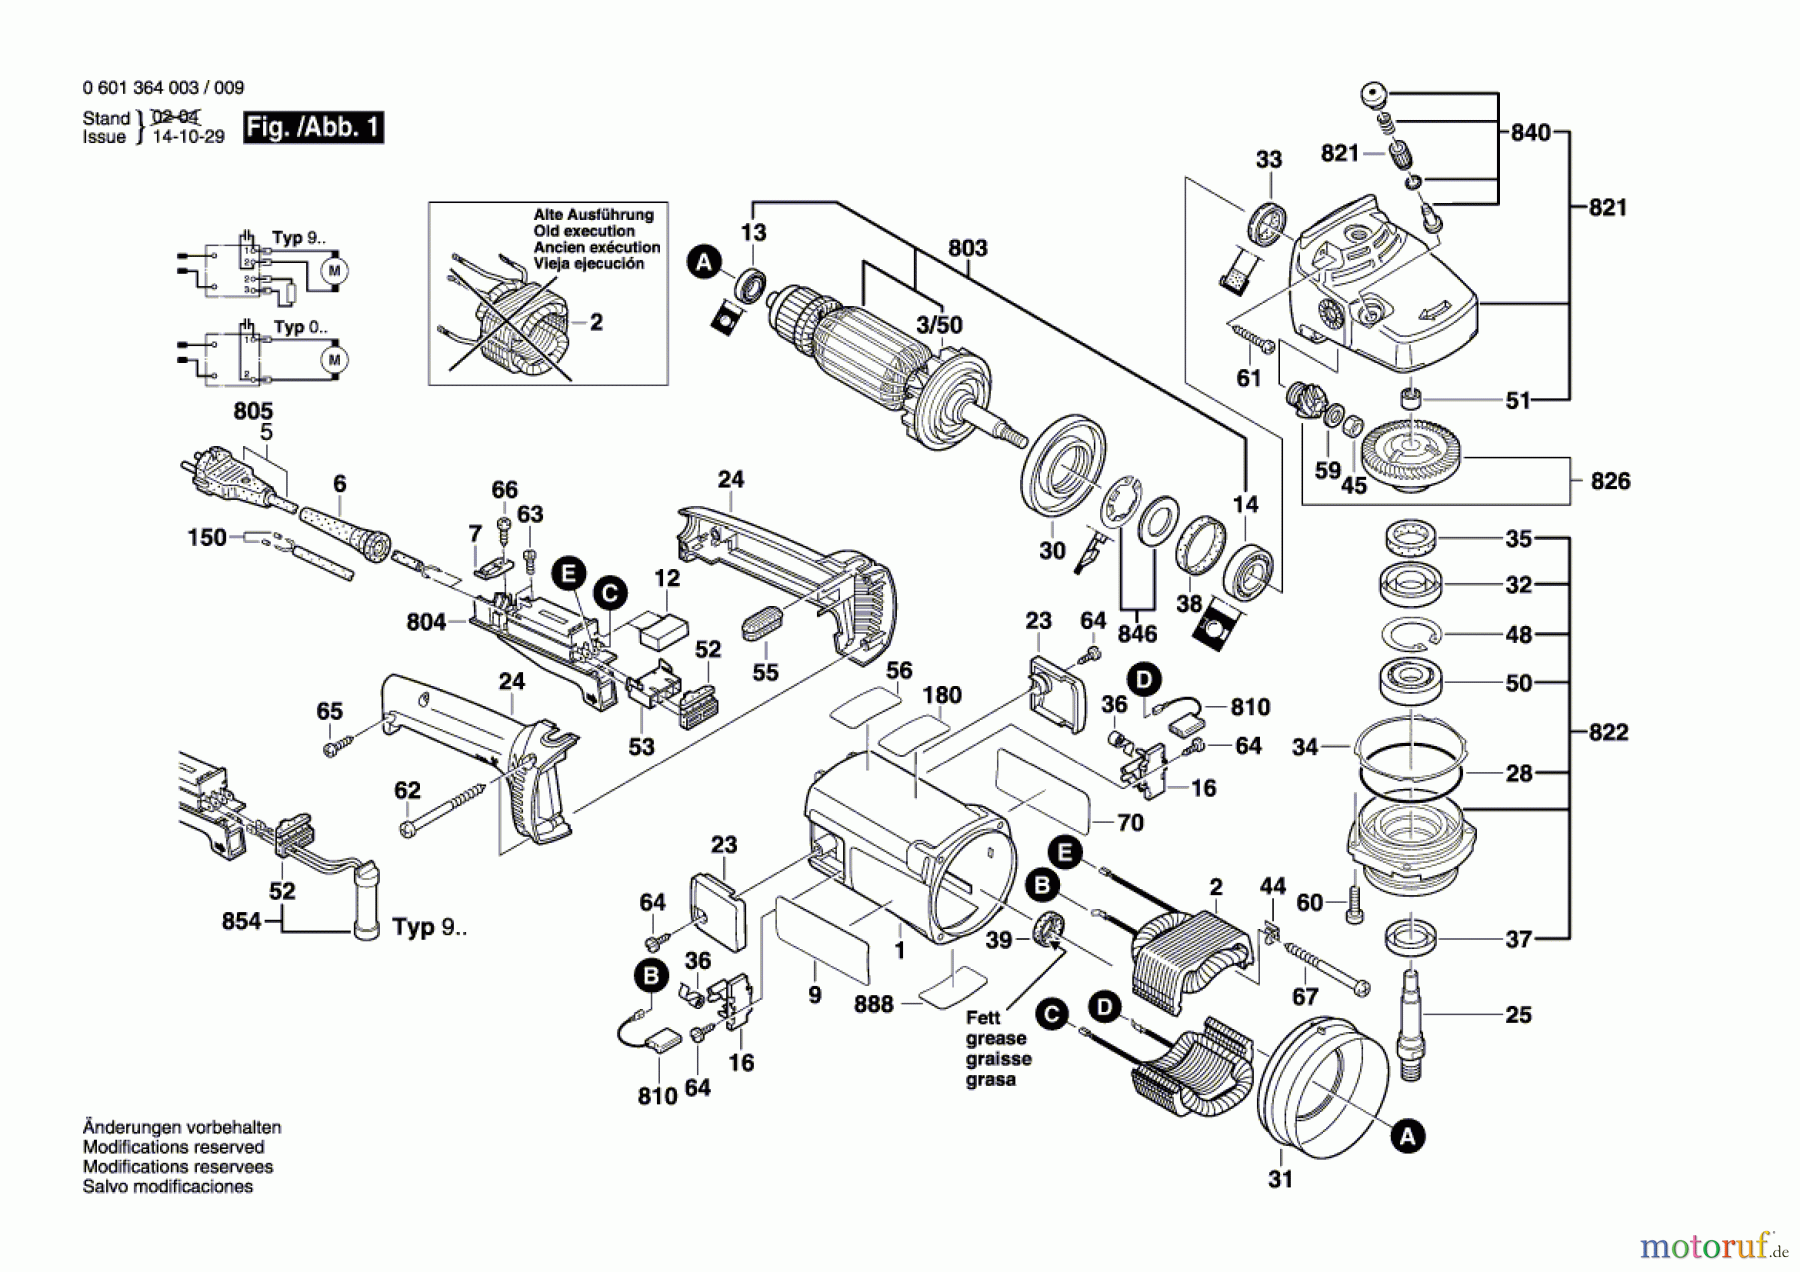  Bosch Werkzeug Winkelschleifer GWS 24-300 Seite 1